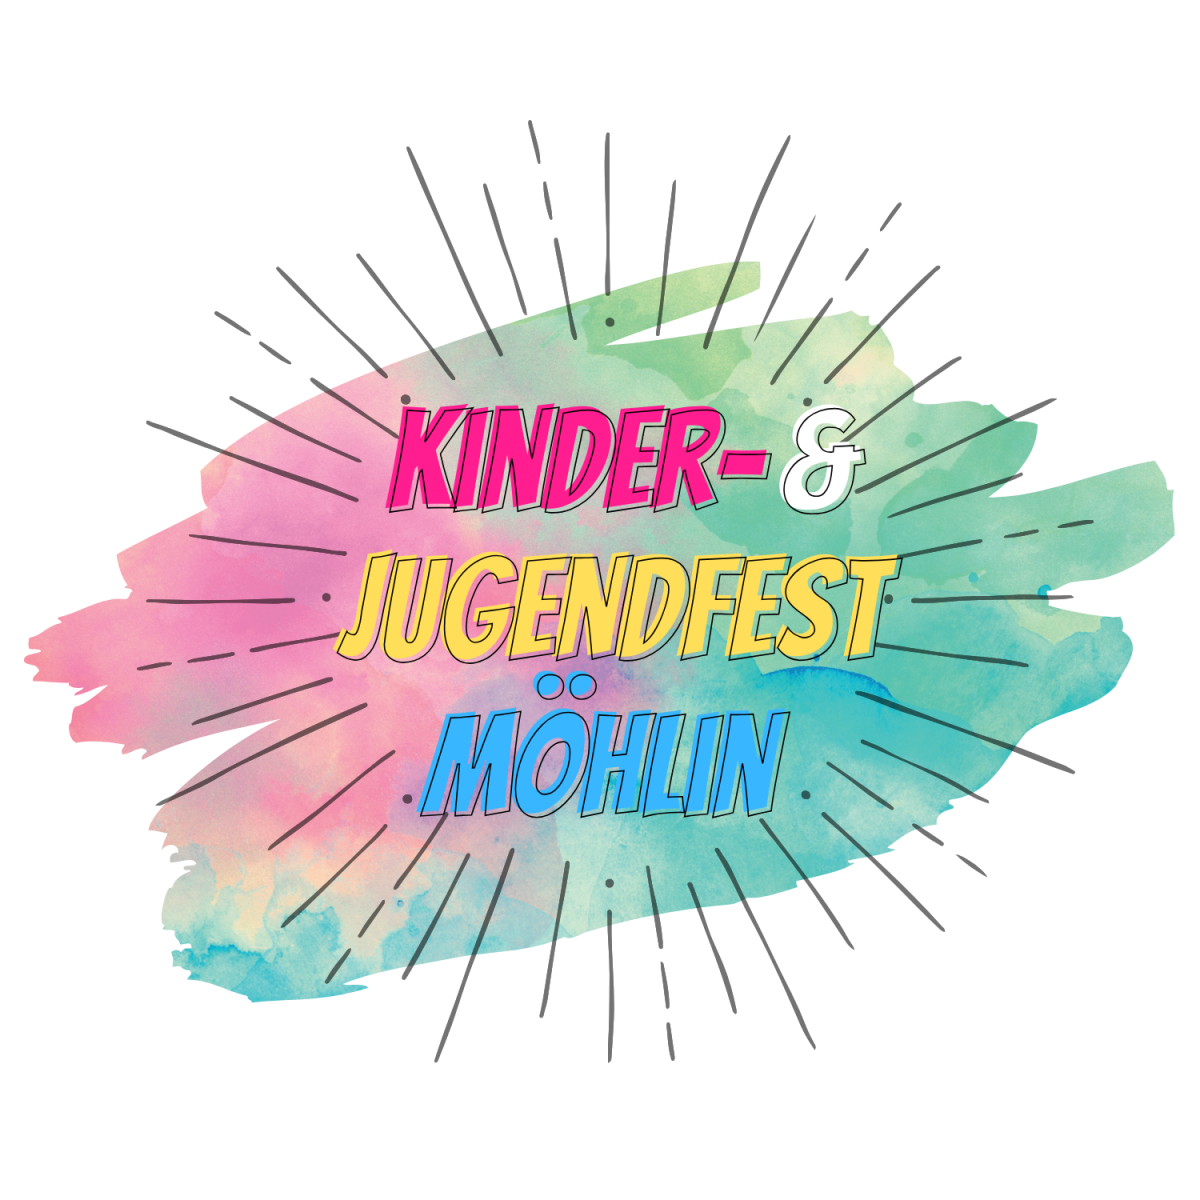 Kinder- & Jugendfest Möhlin